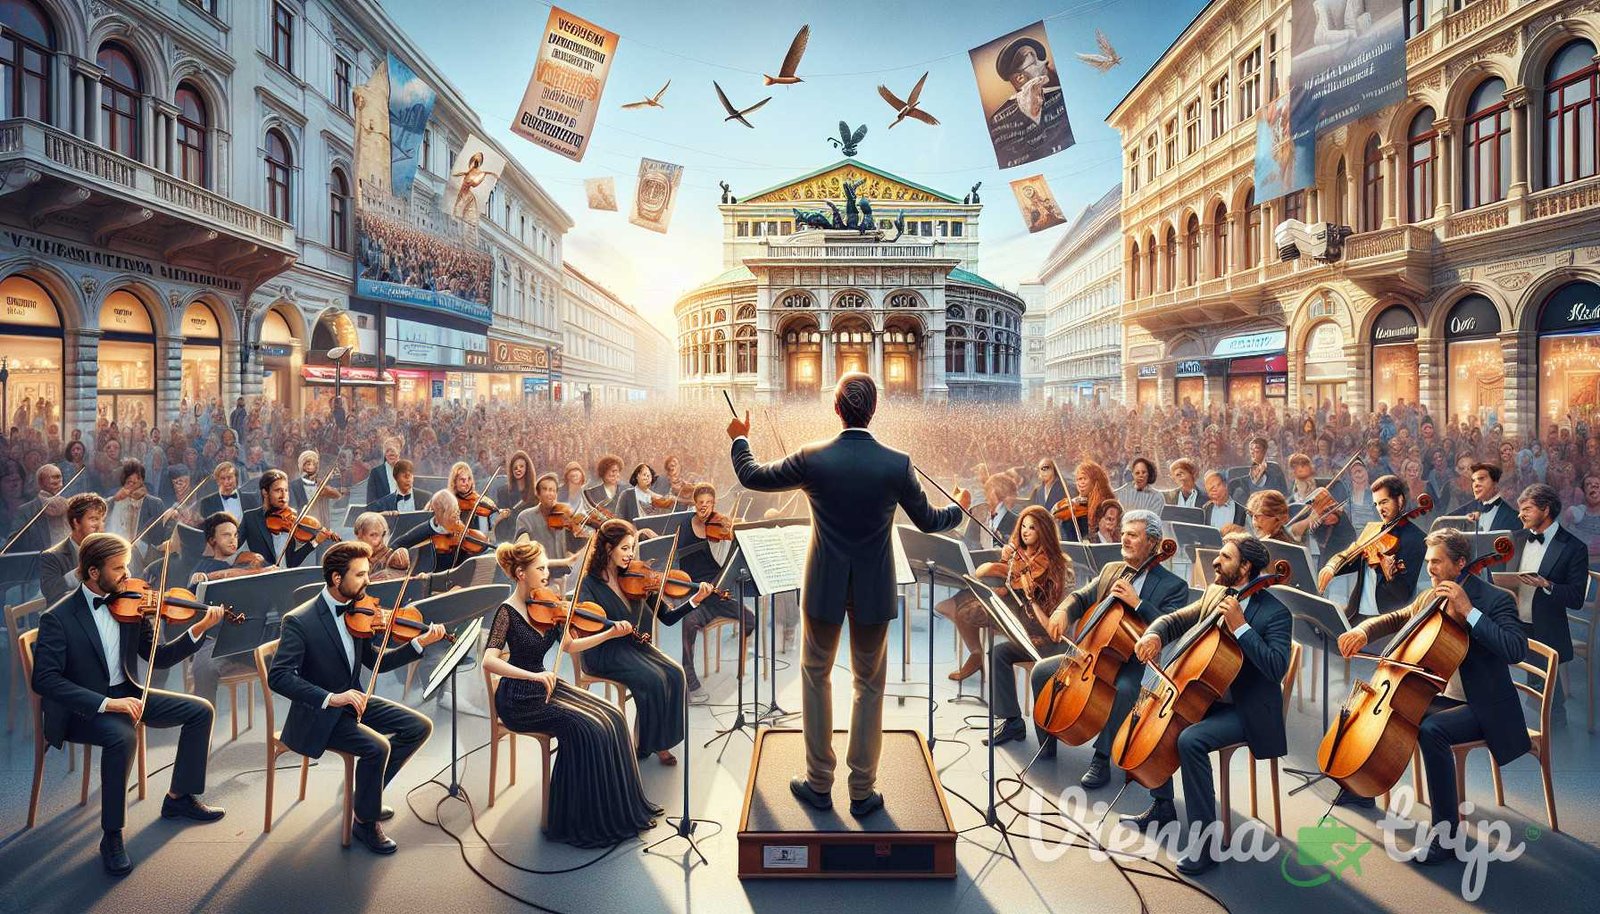 Ilustrácia k sekcii: Očarujúce melódie Viedne presahujú opery a koncertné sály. Živé melódie mu - viedenského mesta